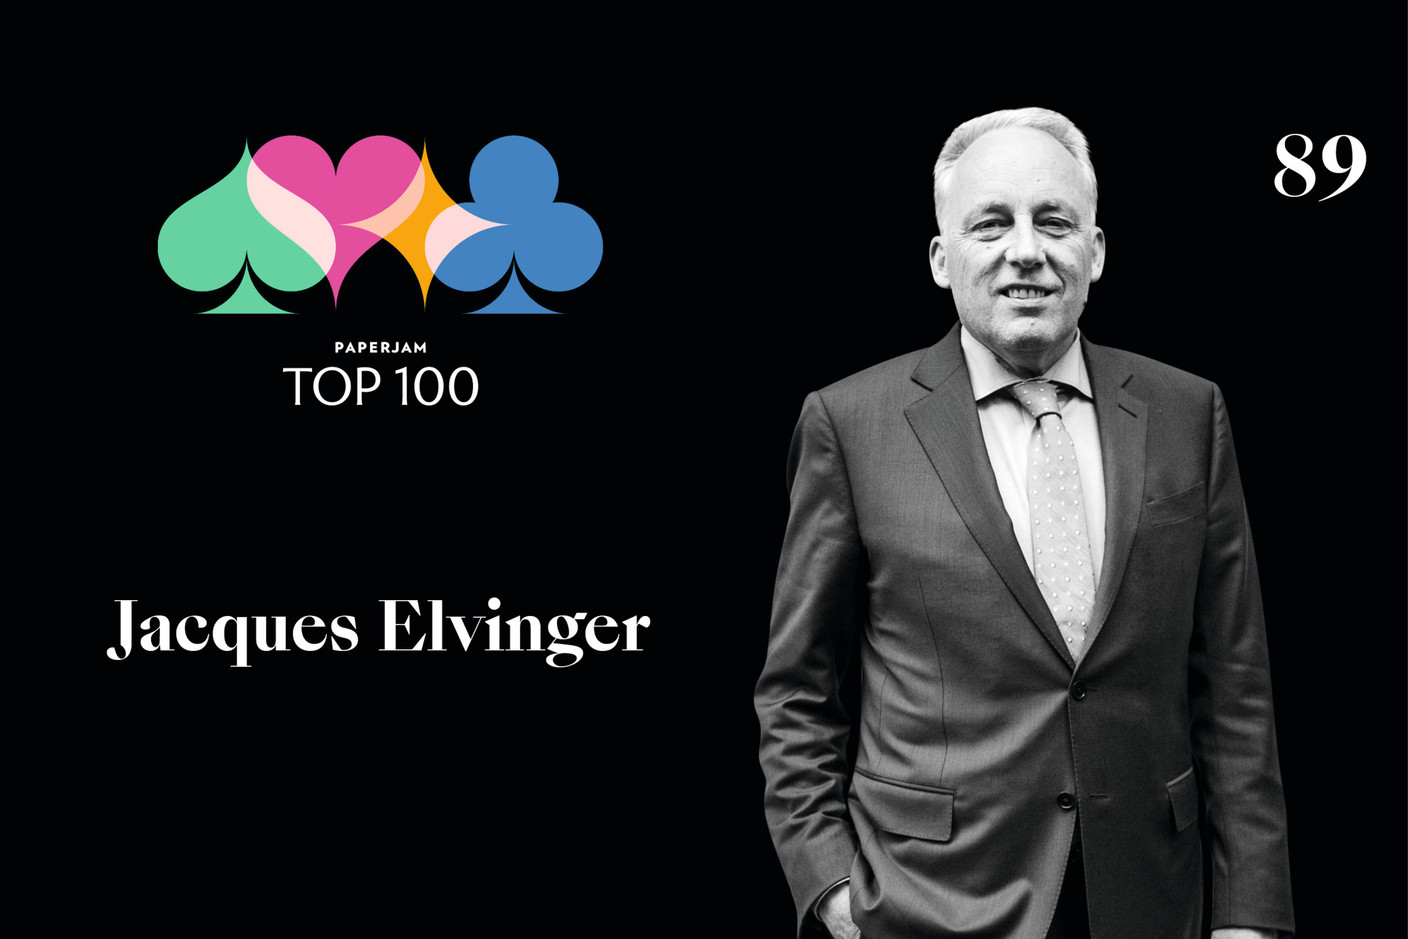 Jacques Elvinger, n°89 du Paperjam Top 100 2020. (Illustration: Maison Moderne)